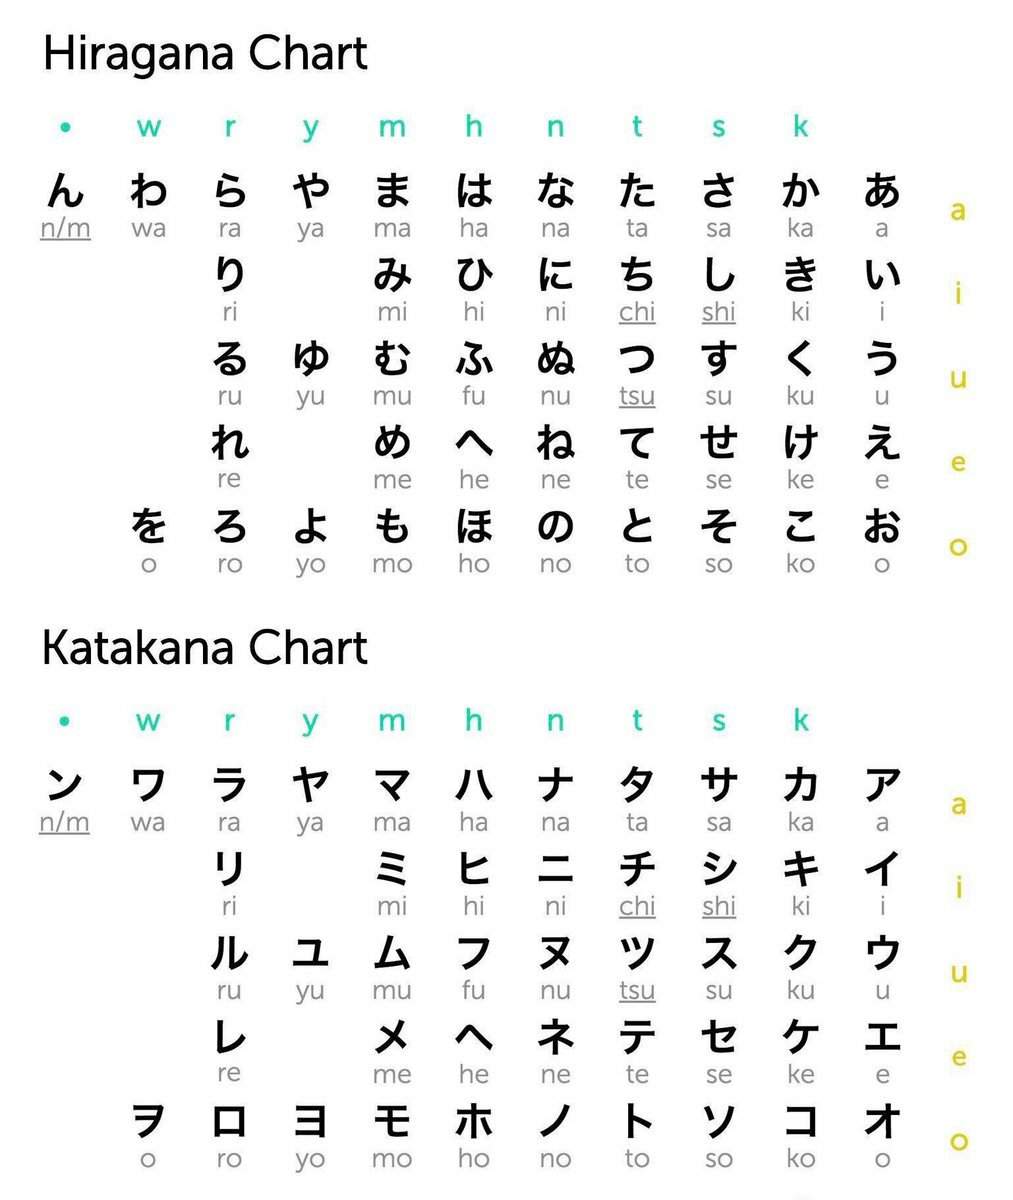 تعلم اللغة اليابانية الدرس الاول Wiki امبراطورية الأنمي Amino